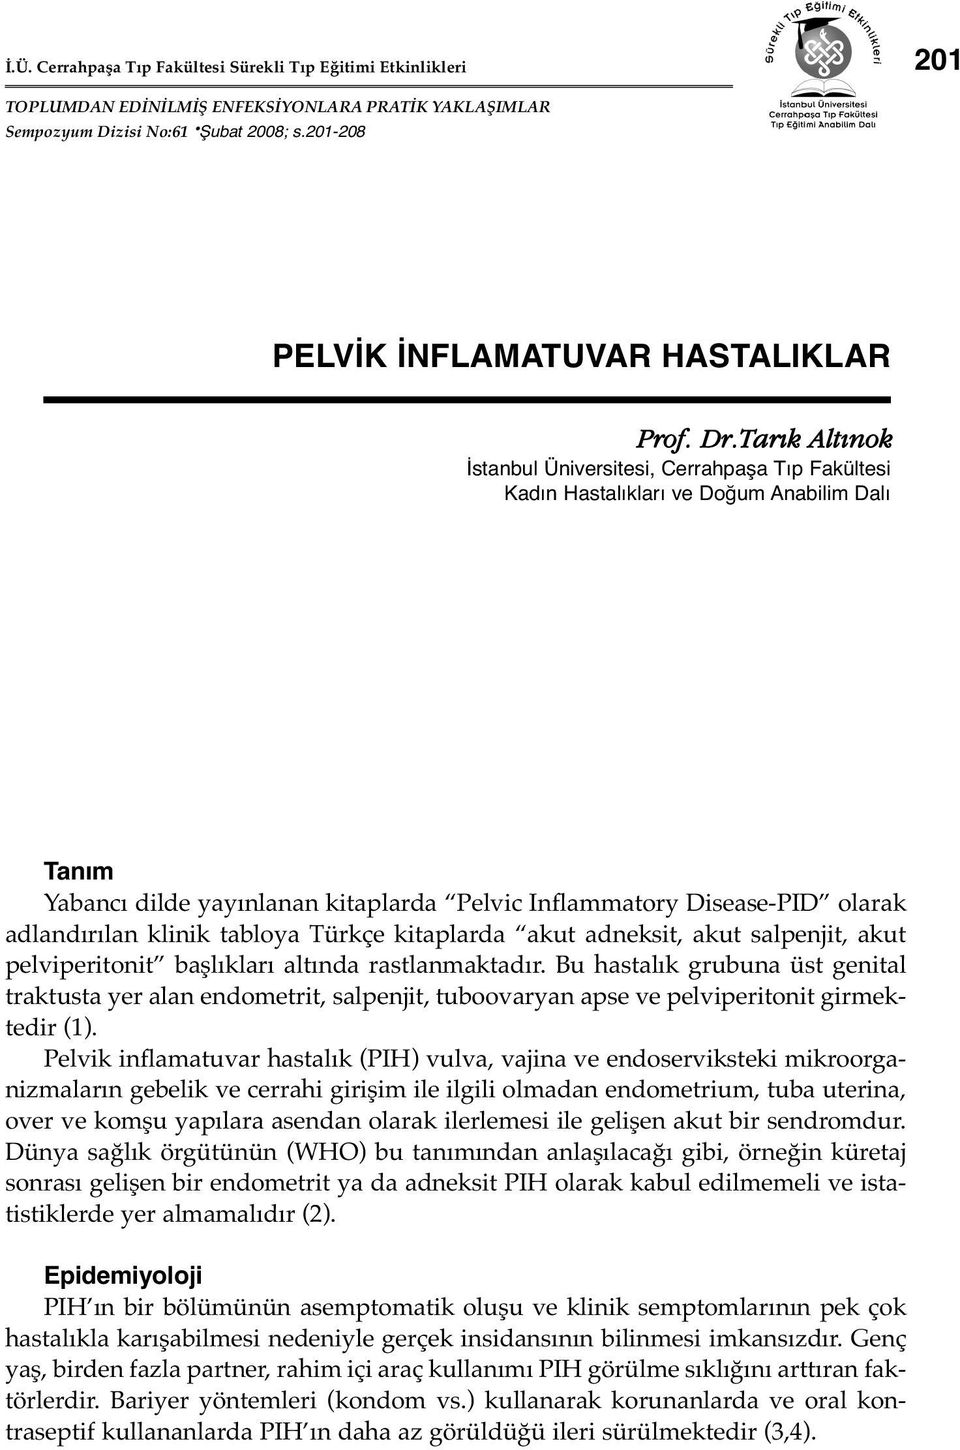 Tar k Alt nok İstanbul Üniversitesi, Cerrahpaşa Tıp Fakültesi Kadın Hastalıkları ve Doğum Anabilim Dalı Tanım Yabancı dilde yayınlanan kitaplarda Pelvic Inflammatory Disease-PID olarak adlandırılan